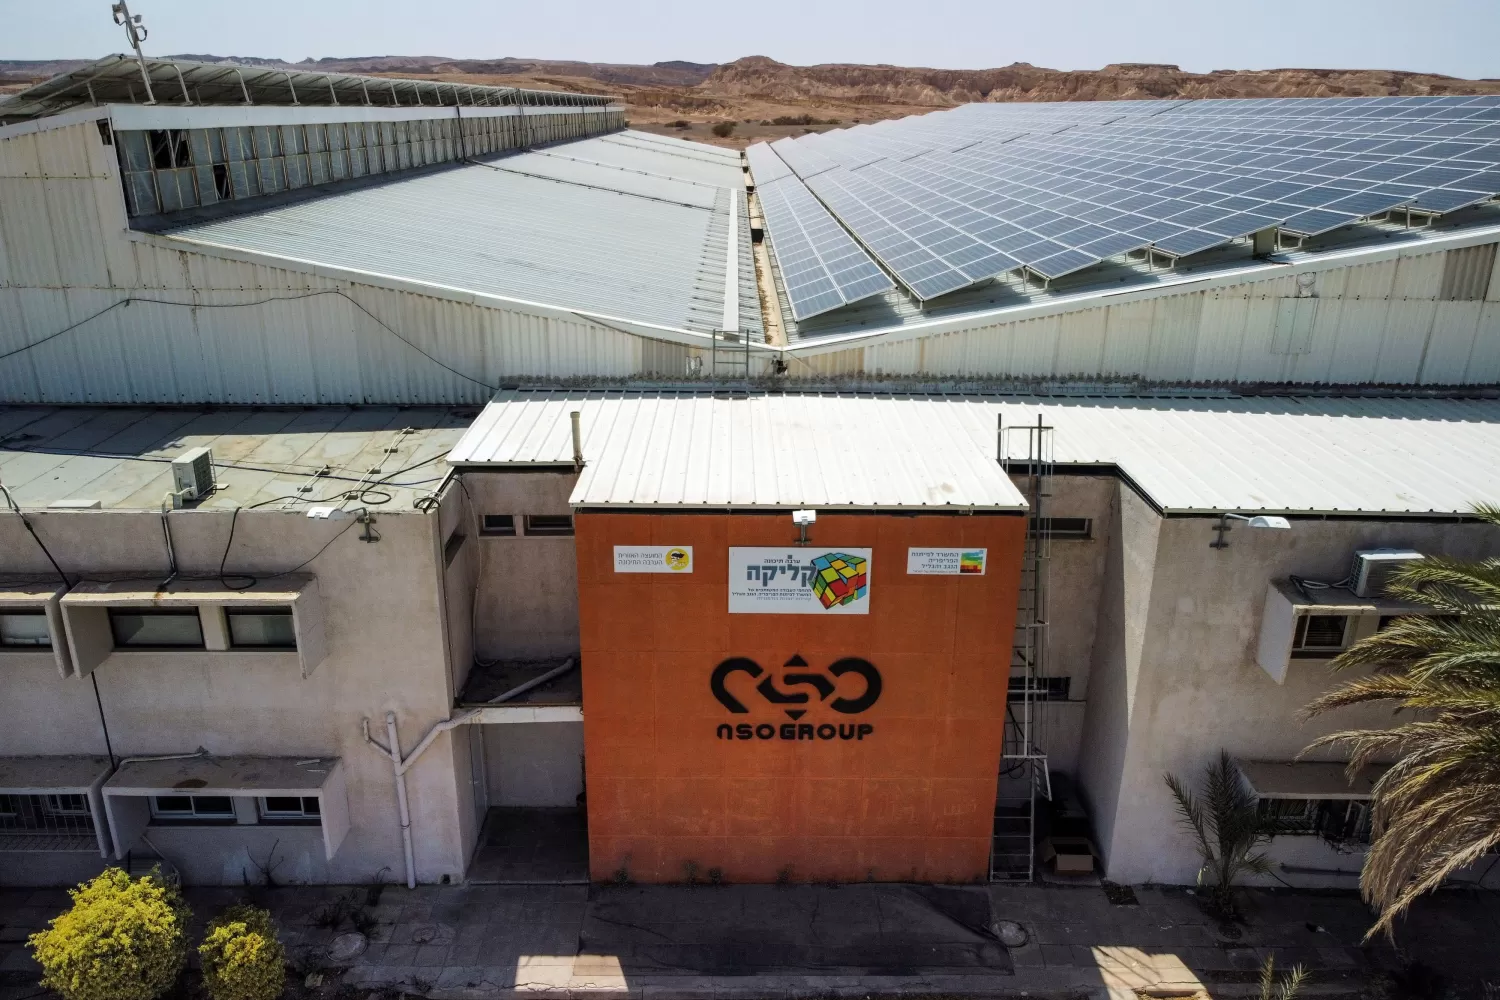 LA PLANTA. Una vista aérea deja ver el logo de la firma tecnológica NSO Group, en una de sus locaciones, en el desierto de Arava, al sur de Israel.  